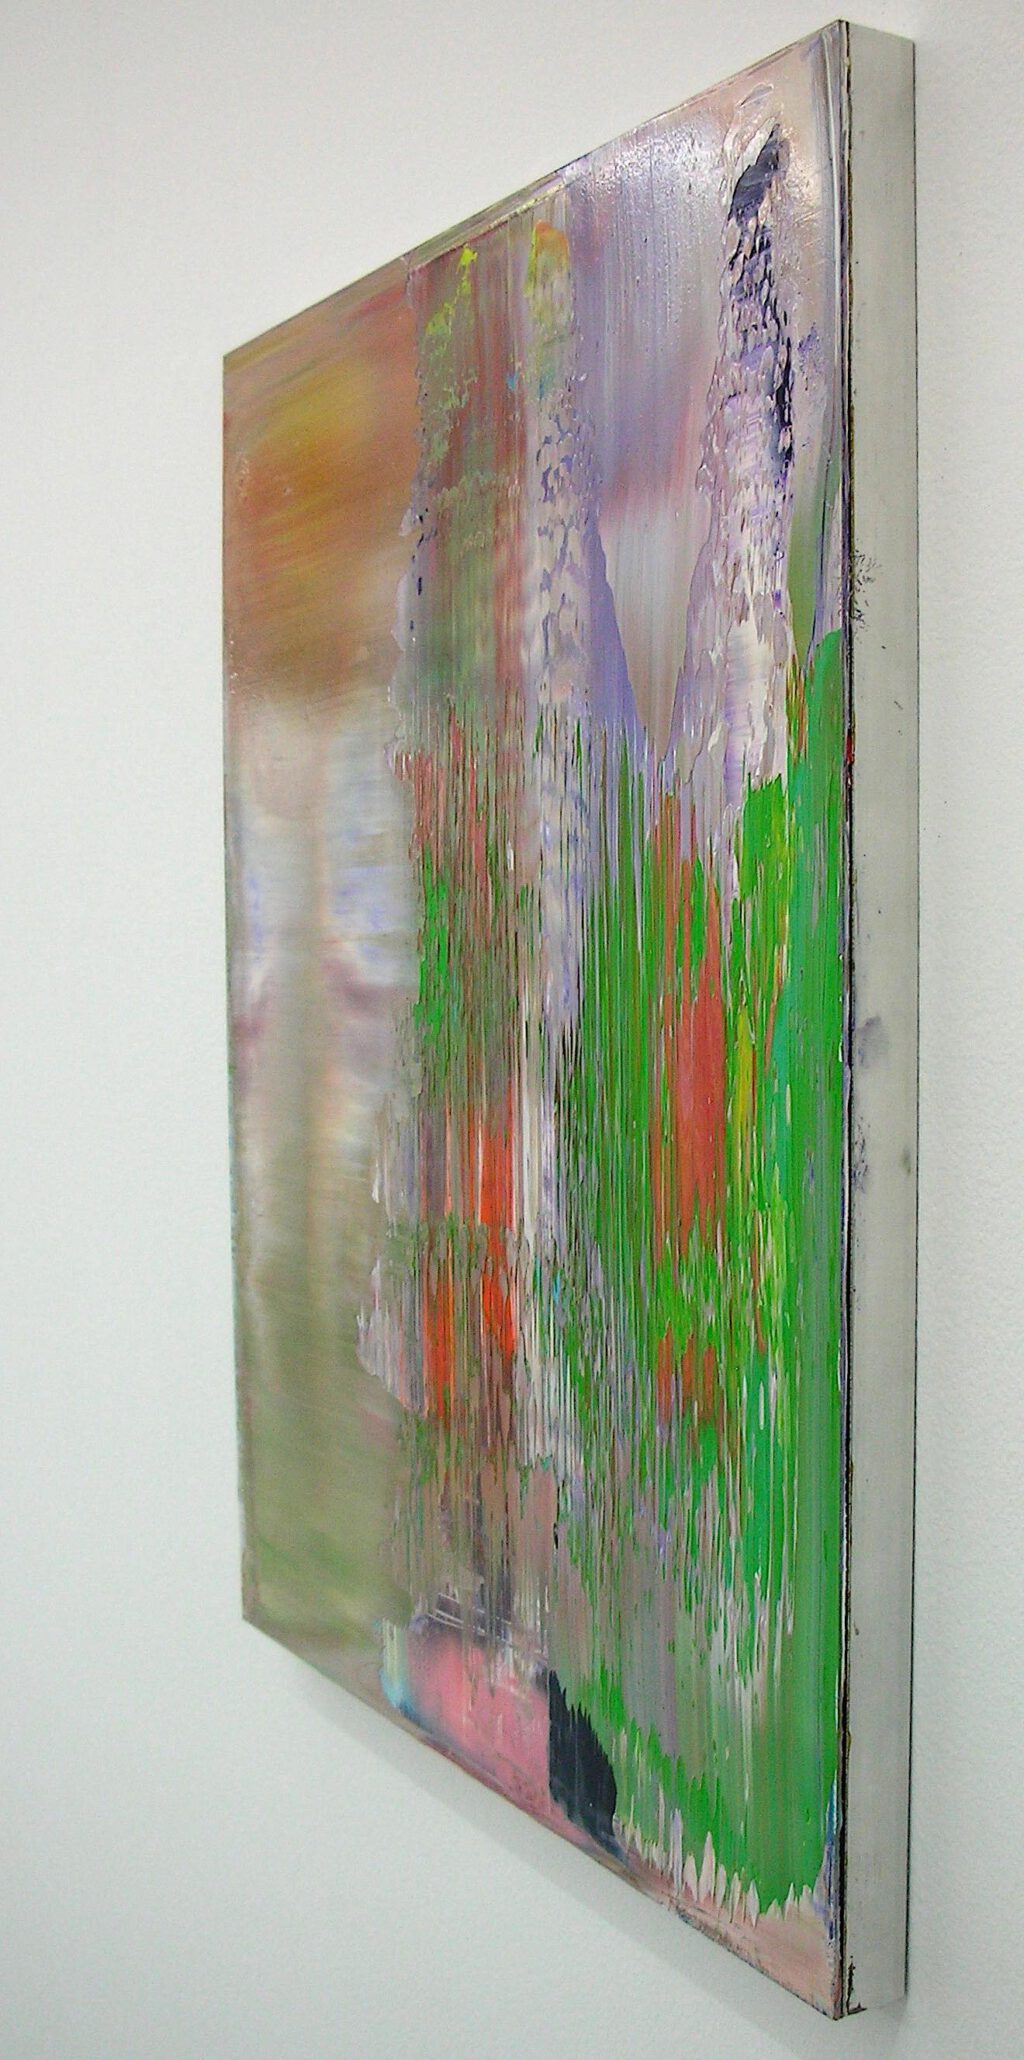 ゲルハルト・リヒター Gerhard Richter Abstraktes Bild 864-8 2000, Oil on aluminium, 50 x 40 cm